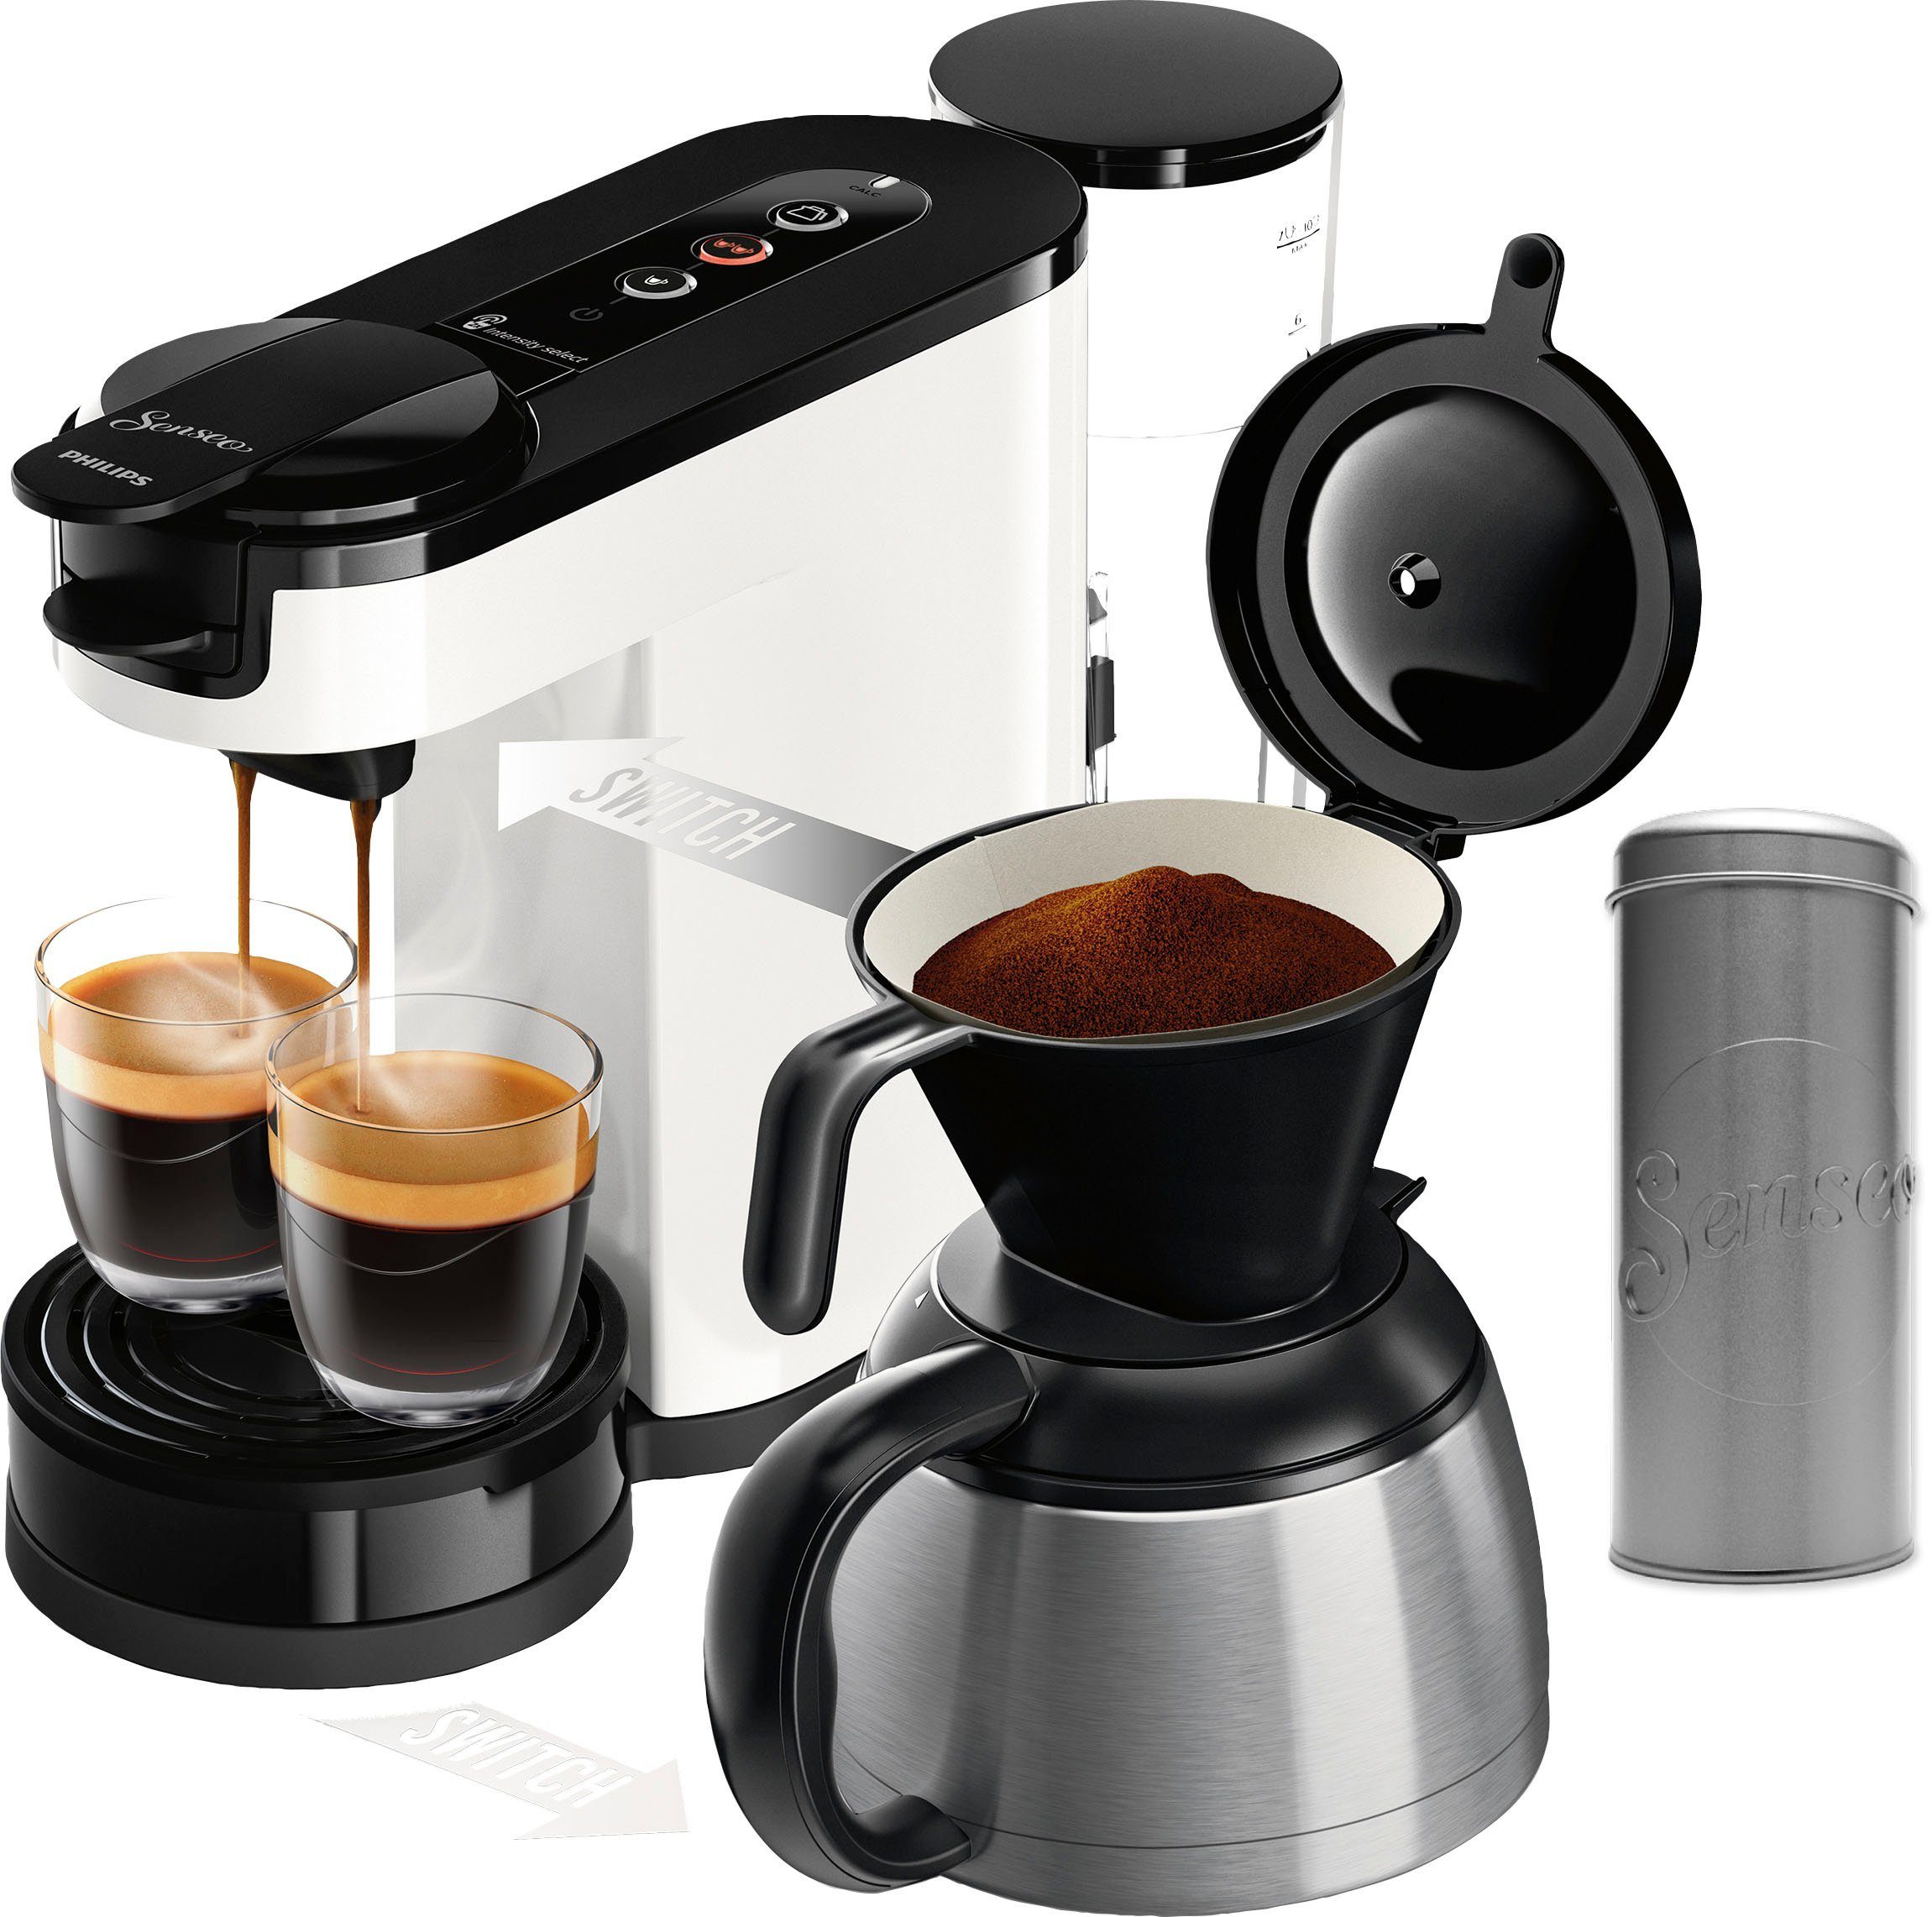 Kaffeepaddose Senseo Philips 1l UVP Kaffeepadmaschine Wert im inkl. € 9,90 HD6592/04, Switch von Kaffeekanne,